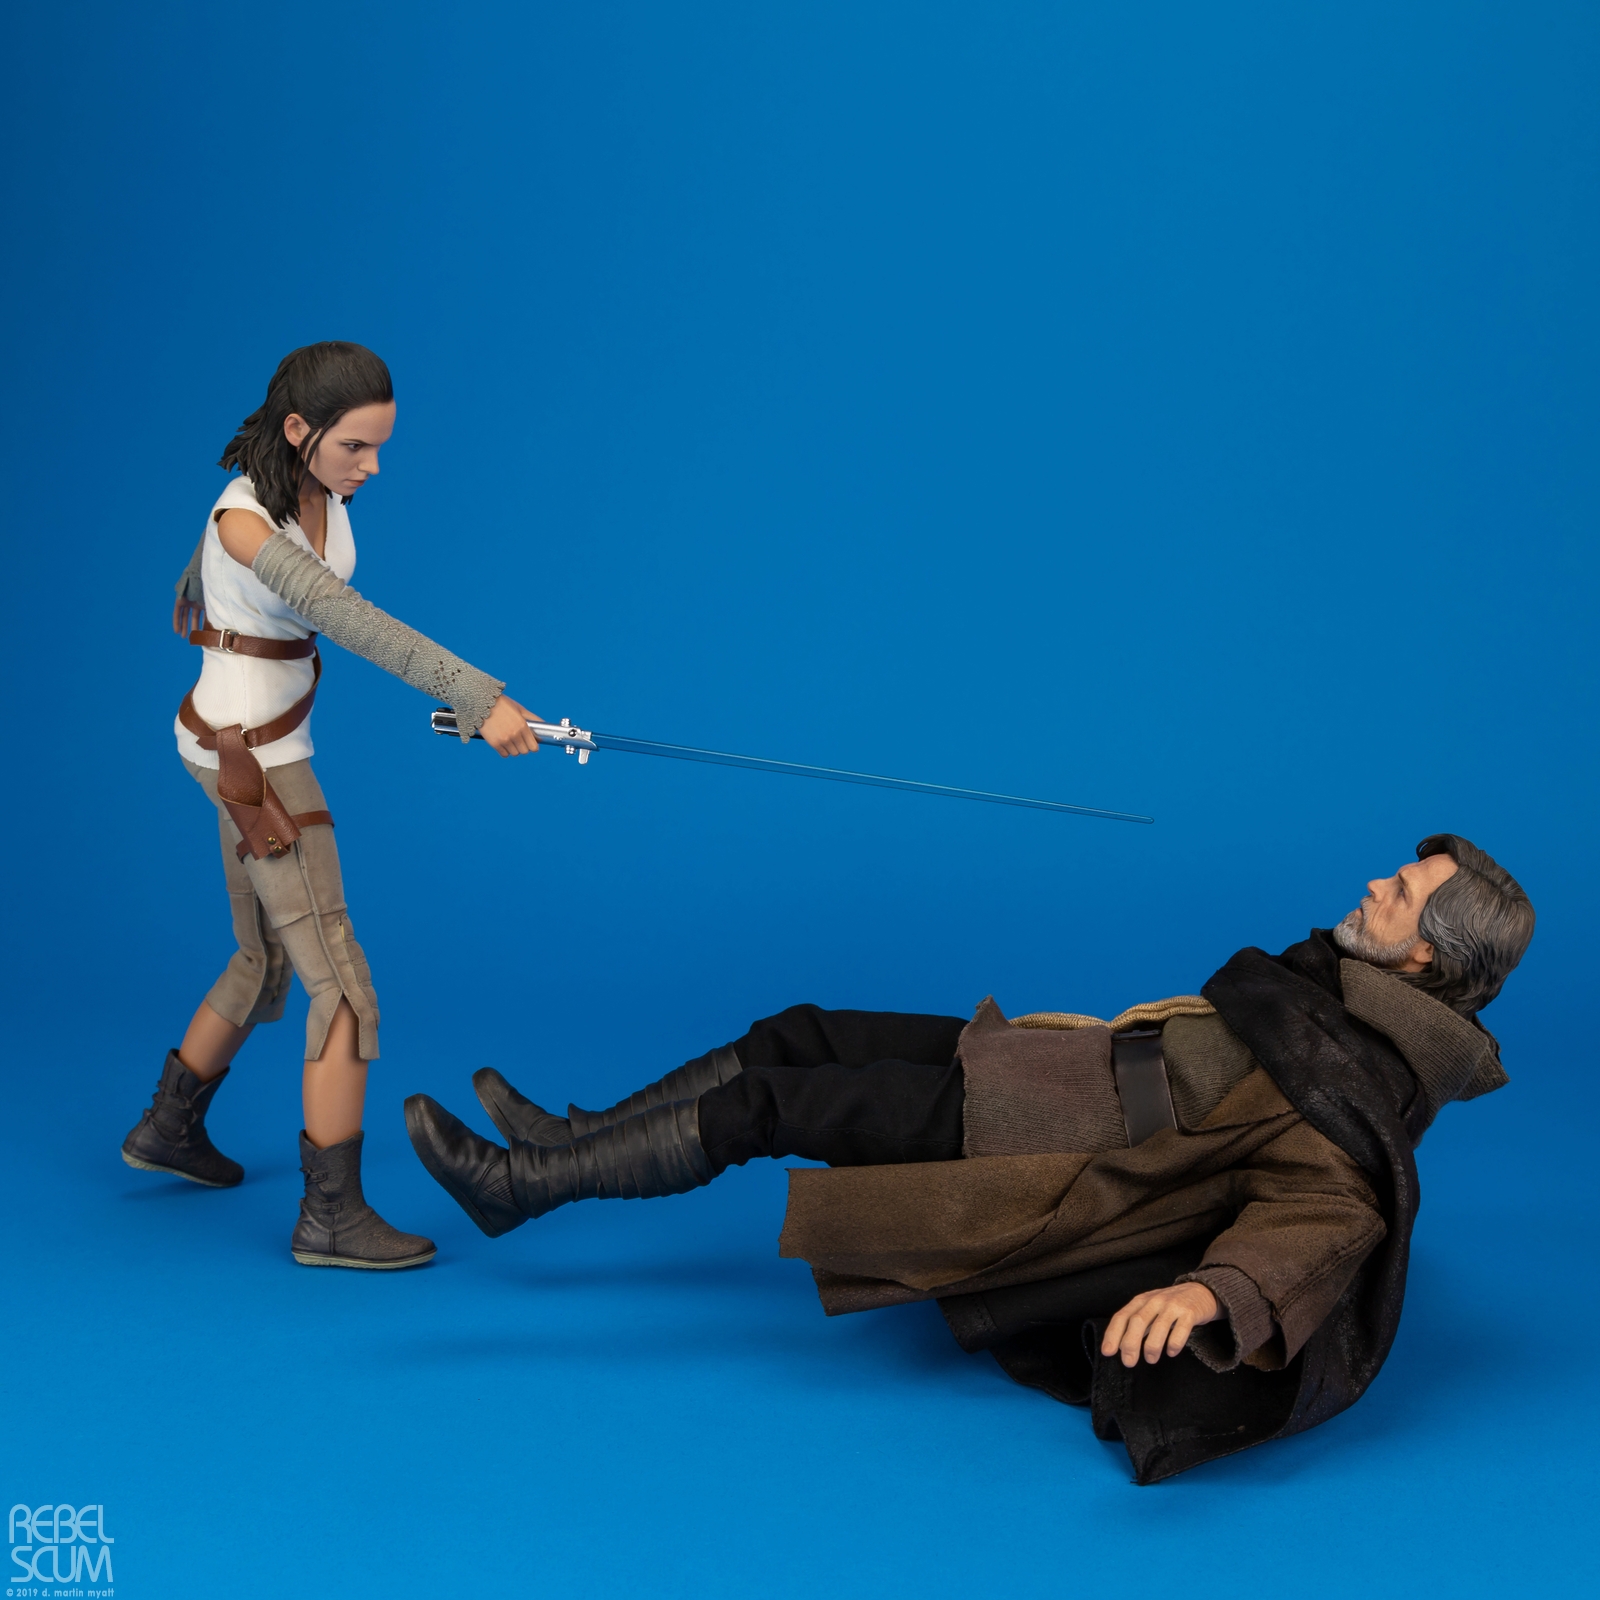 Luke-Skywalker-MMS458-Deluxe-Hot-Toys-Star-Wars-028.jpg